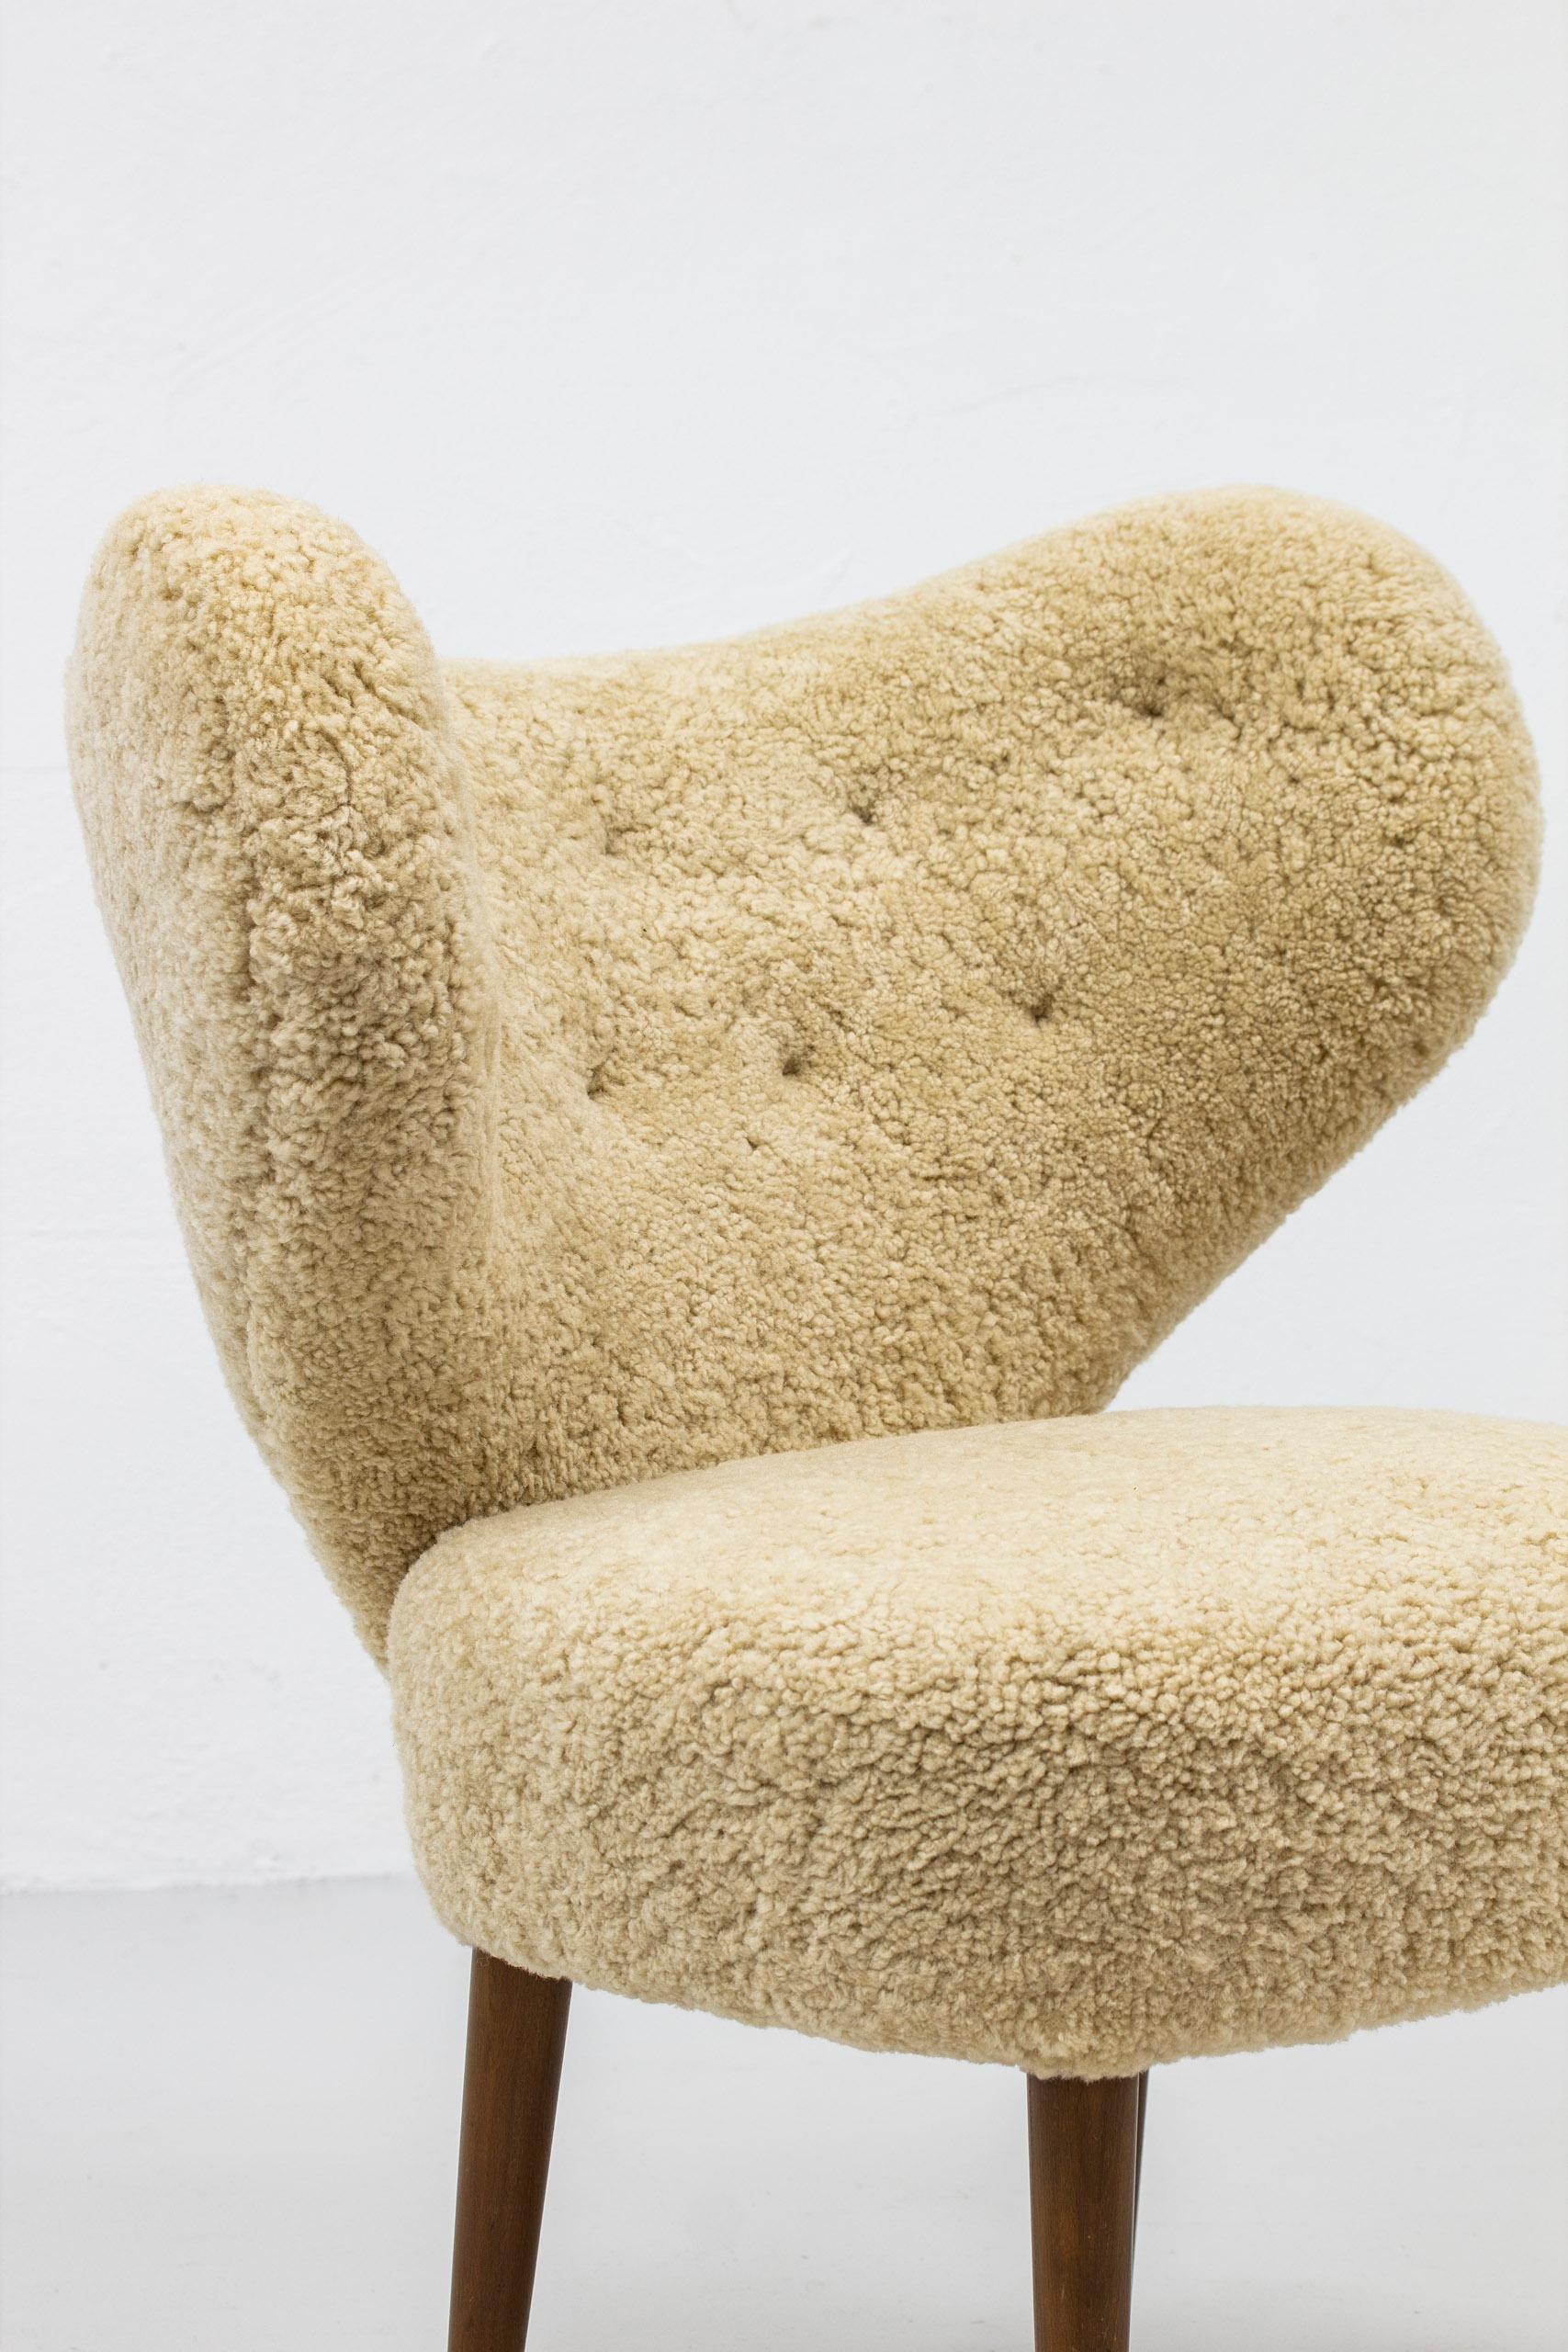 Magnus Stephensen 'Attributed' Lounge Chair Beige Sheepskin Beech Denmark, 1950s For Sale 2